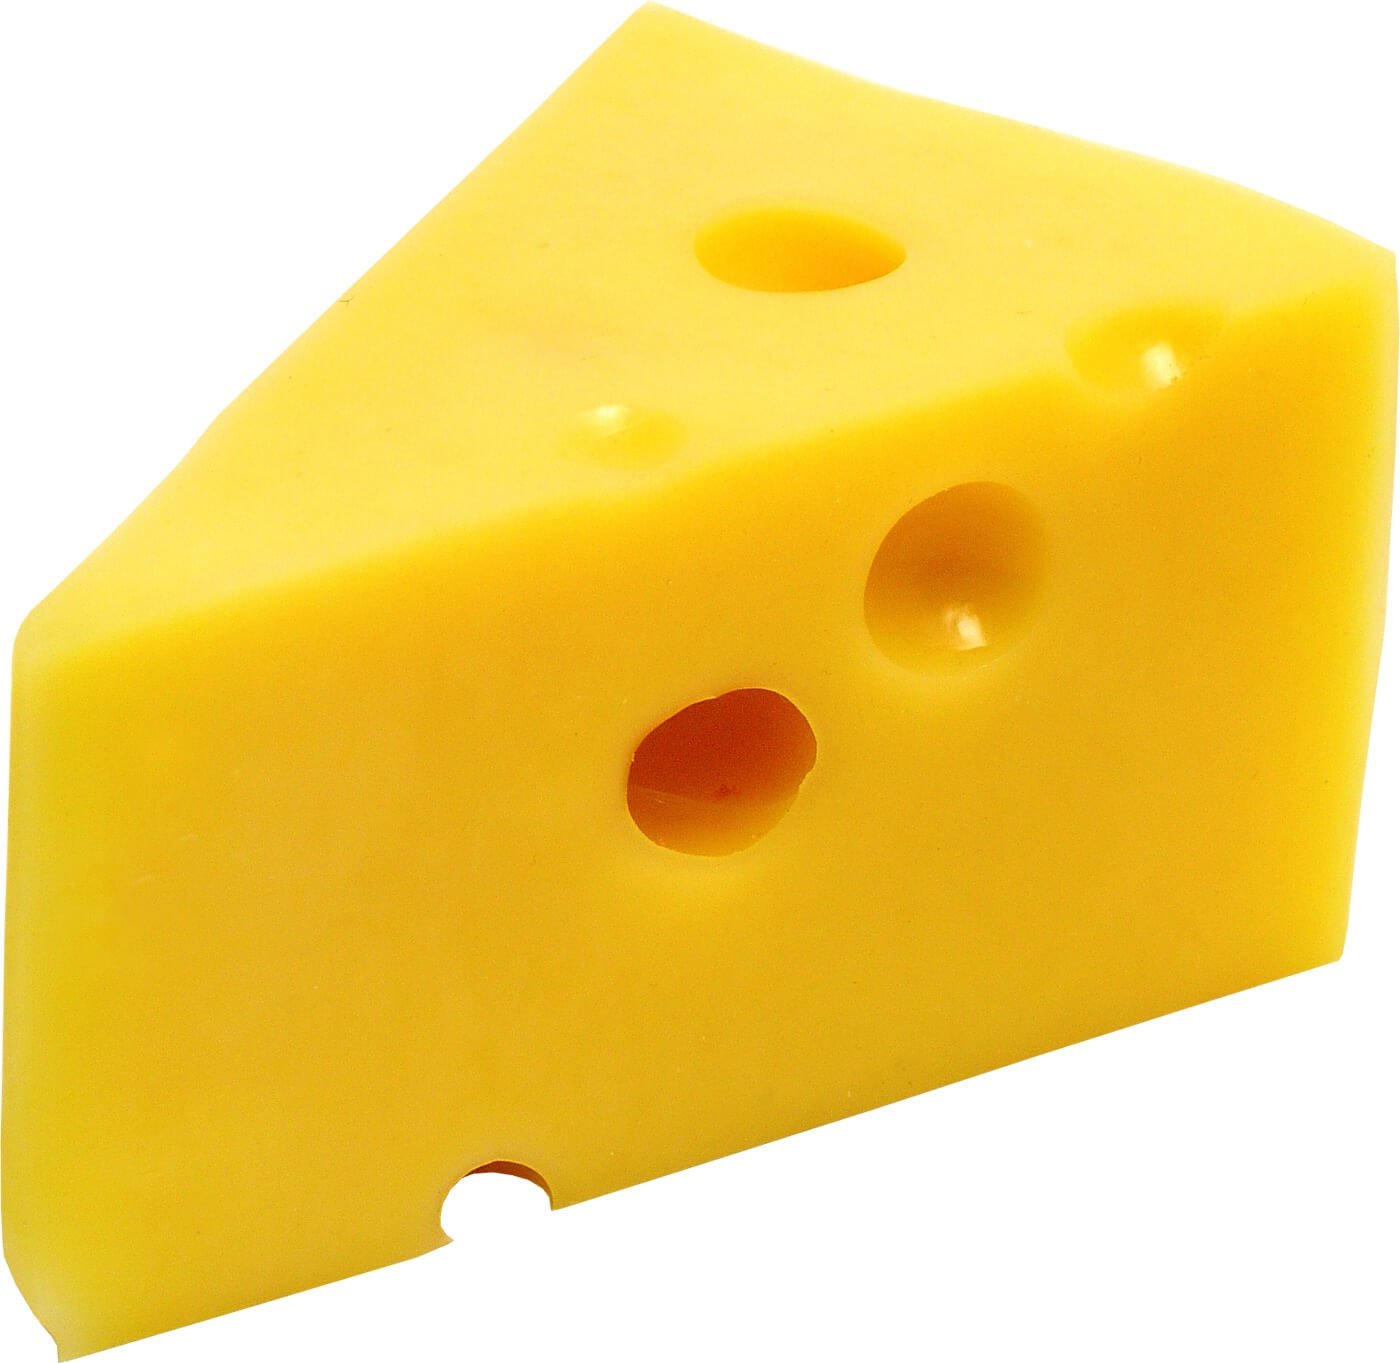 juust